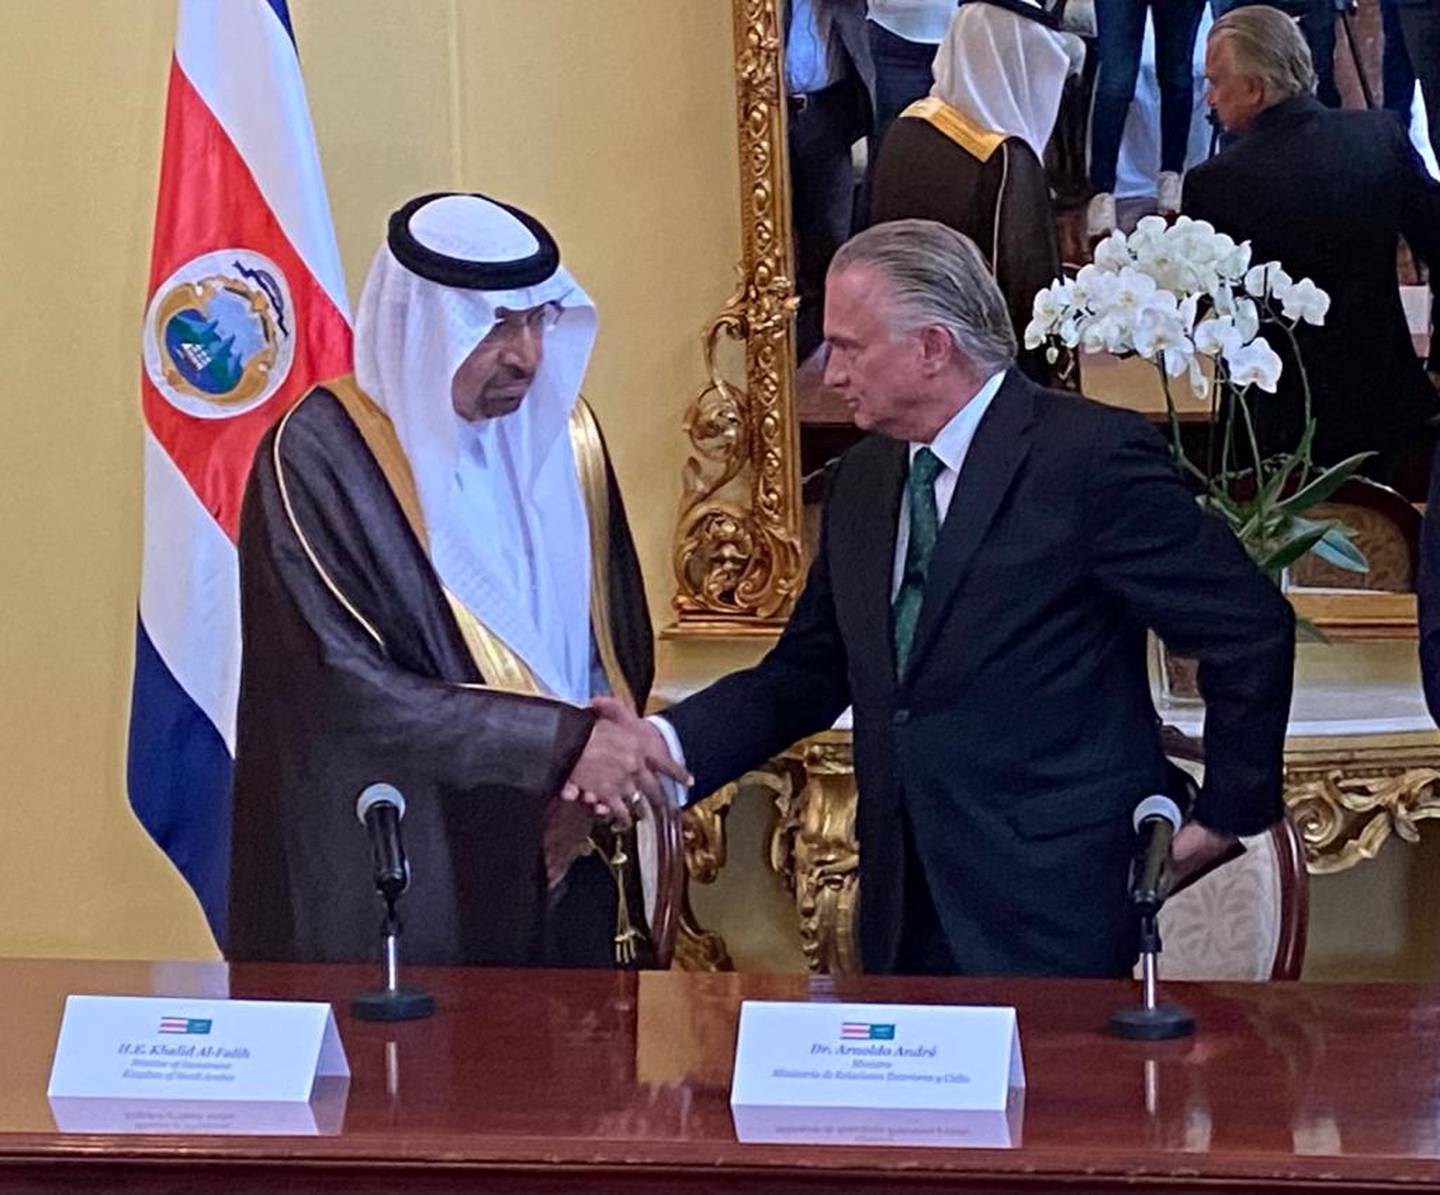 El ministro de Inversiones de Arabia Saudita, Khalid Al-Falih, estrecha la mano del canciller costarricense, Arnoldo André, en el marco de la gira que realiza la delegación del reino petrolero a San José.